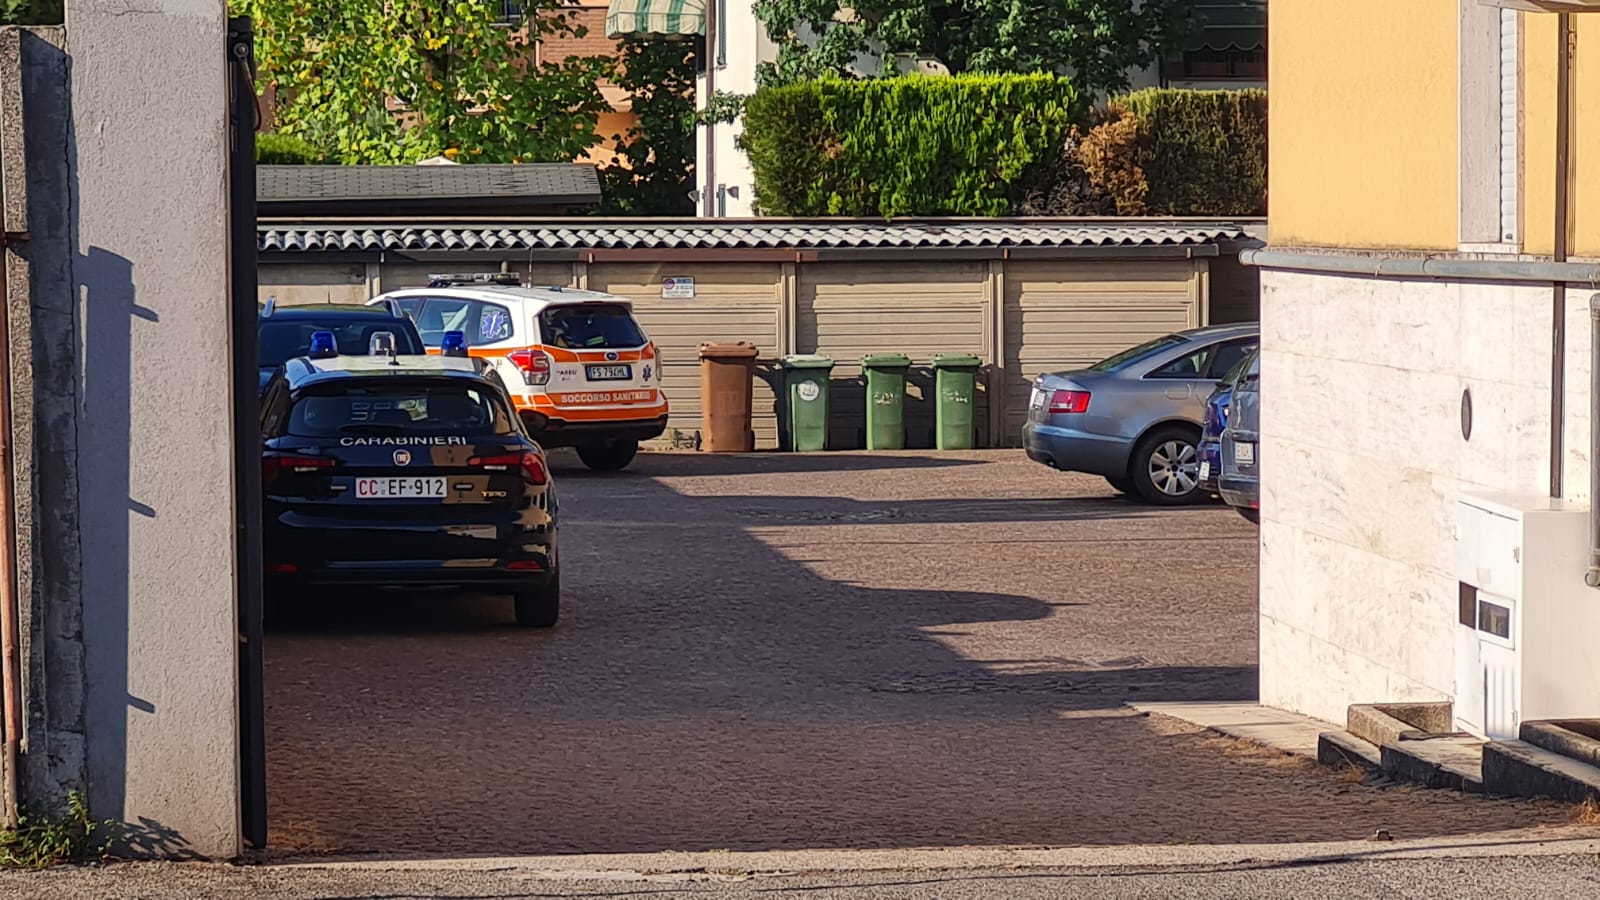 Arcore via Battisti 81 cadavere uomo morto in casa carabinieri